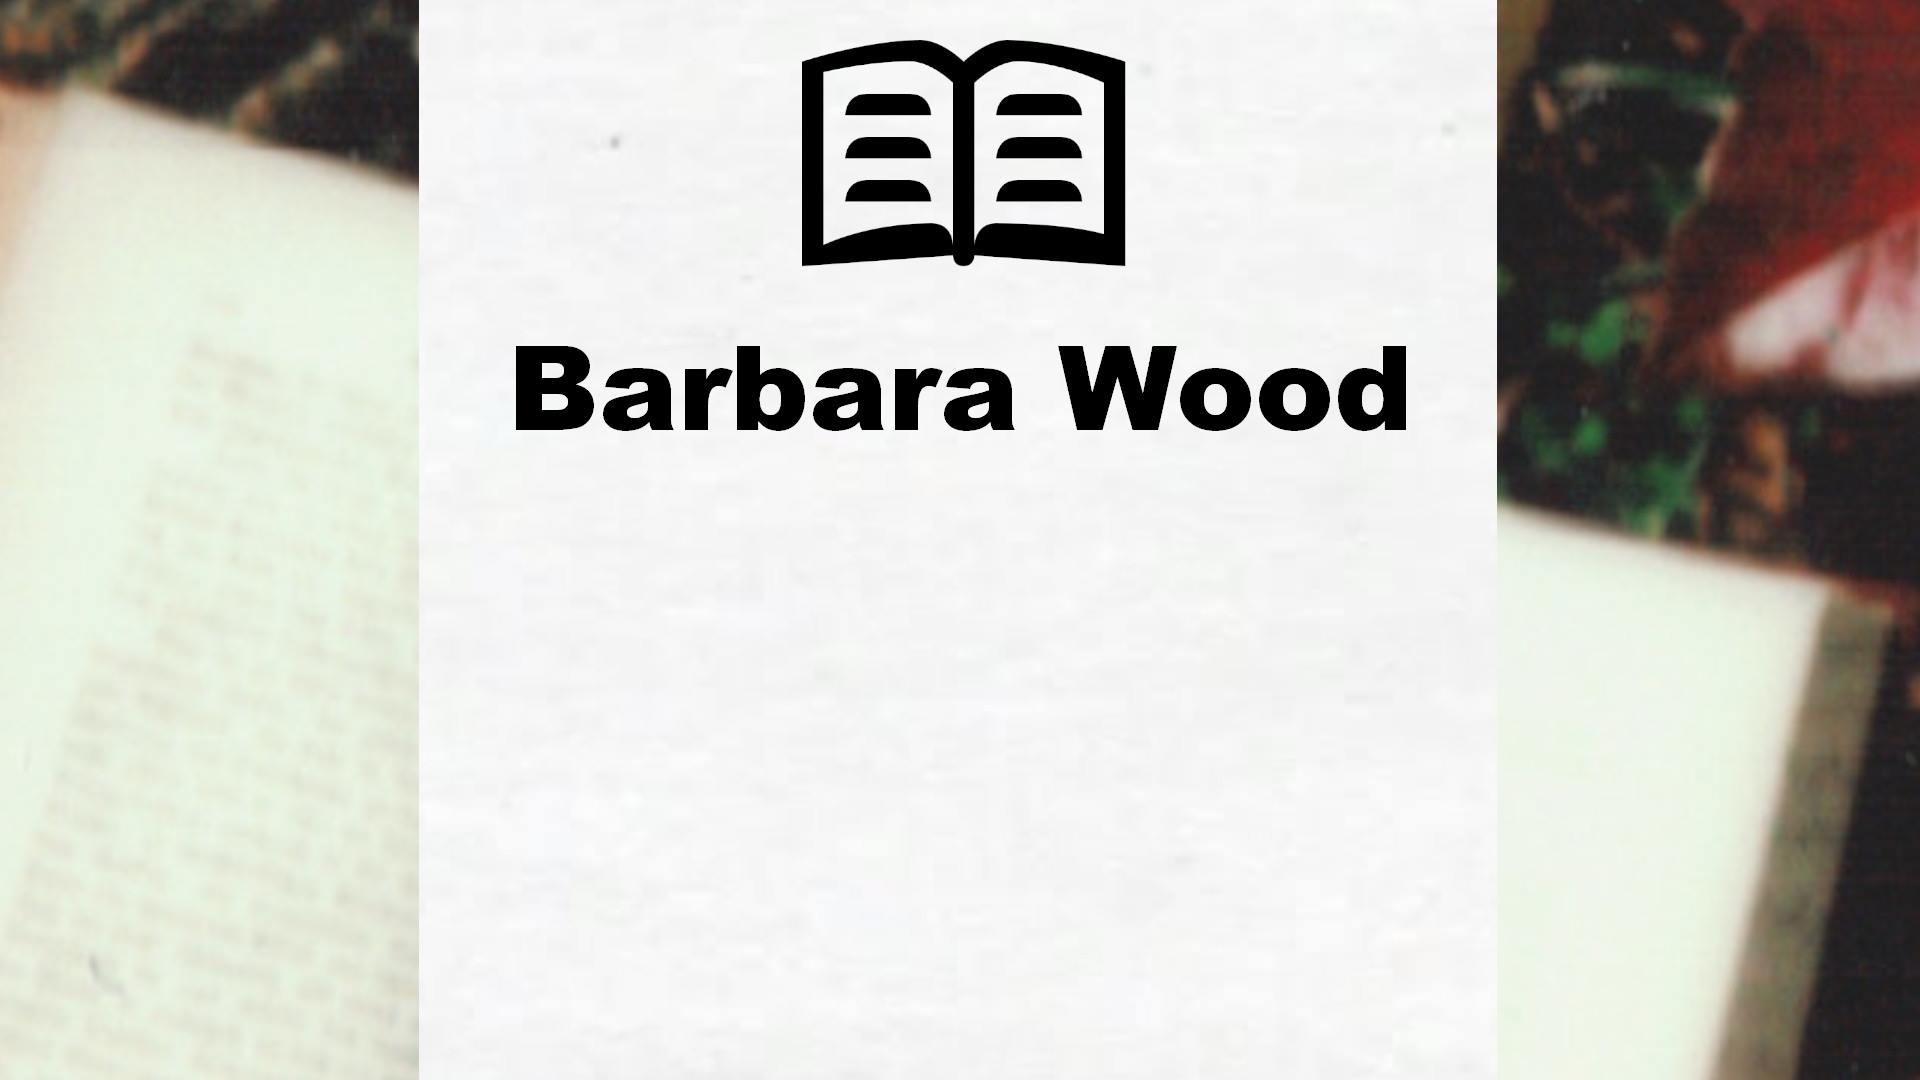 Livres de Barbara Wood